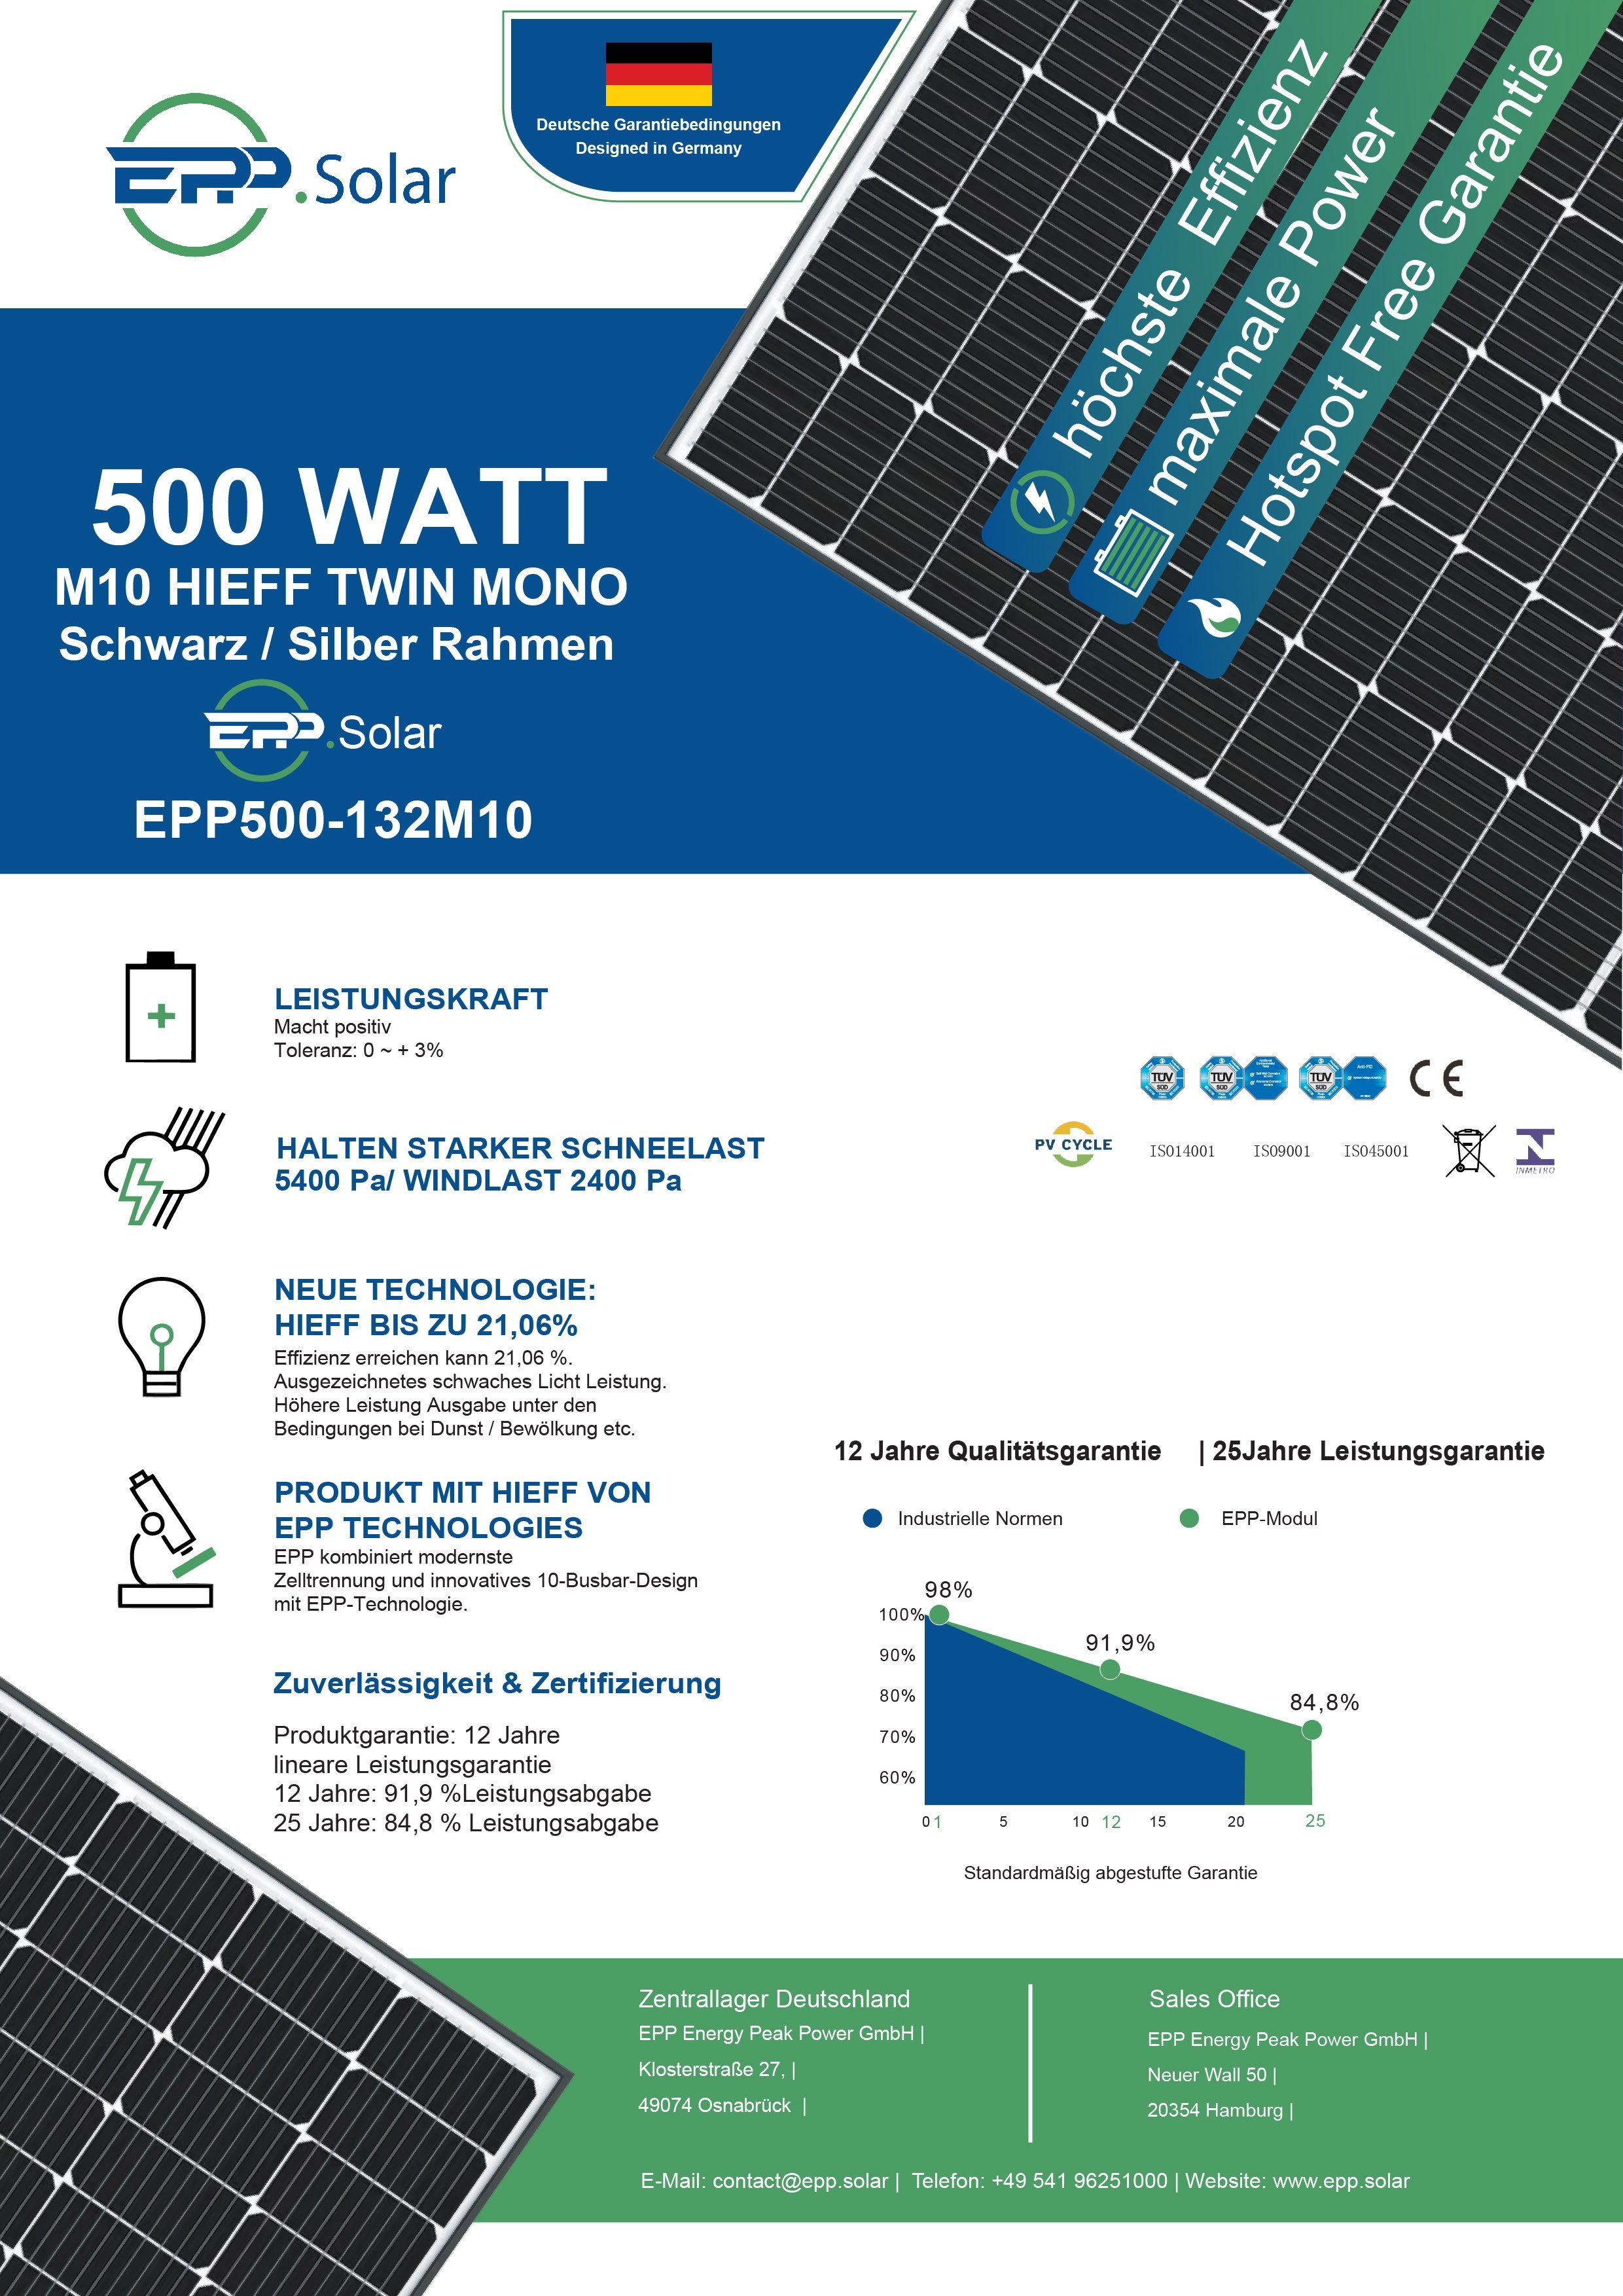 Stegpearl Solaranlage 1000W Balkonkraftwerk WIFI Generation Relais Wechselrichter Neu mit Komplettset 800W Ziegeldach, Deye PV-Montage